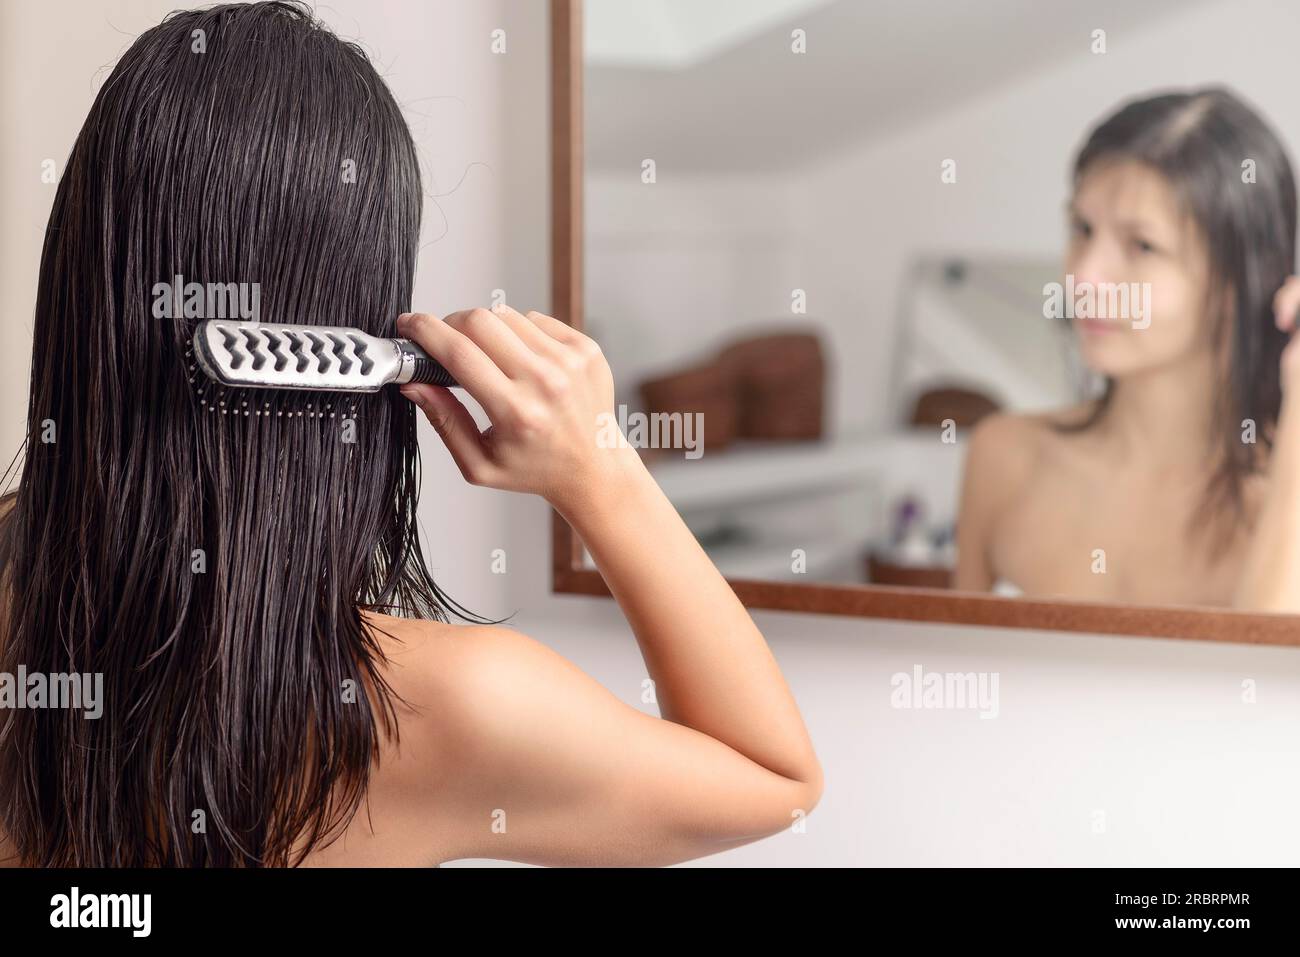 Junge Frau, die im Spiegel steht, während sie ihr nasses Haar nach dem Waschen mit einer Haarbürste bürstet, Blick von hinten Stockfoto